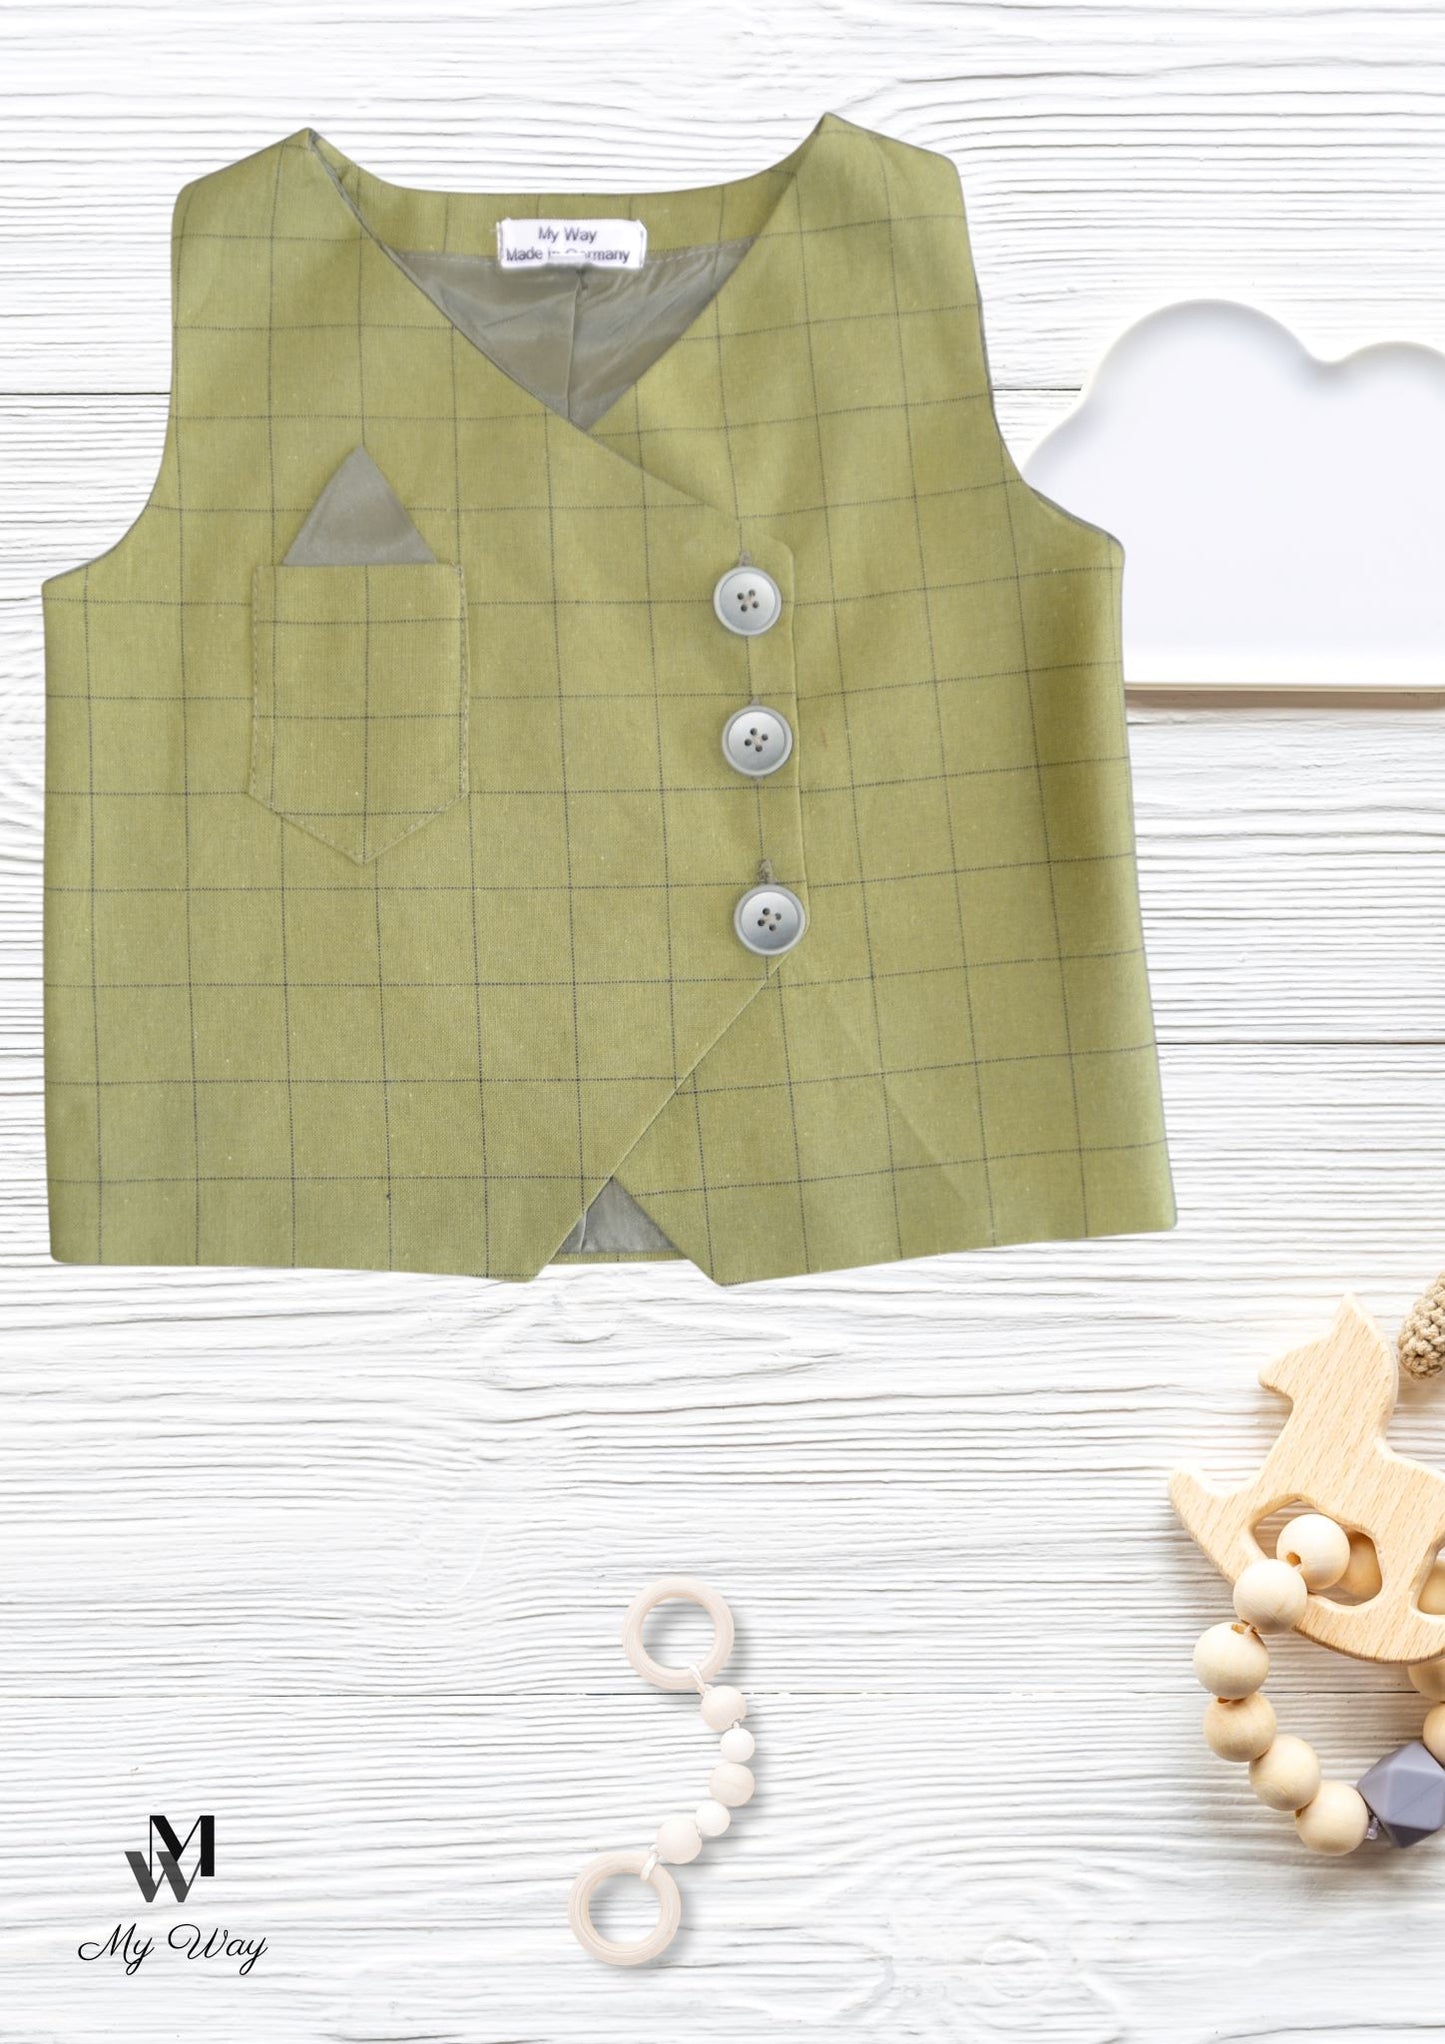 Hochwertige Grün Kinderanzüge von My Way D&A Grüner Kinder-Anzüge online kaufen Anzug für Jungen mit Weste -  zu günstigen Preisen Handegemacht Obenteil